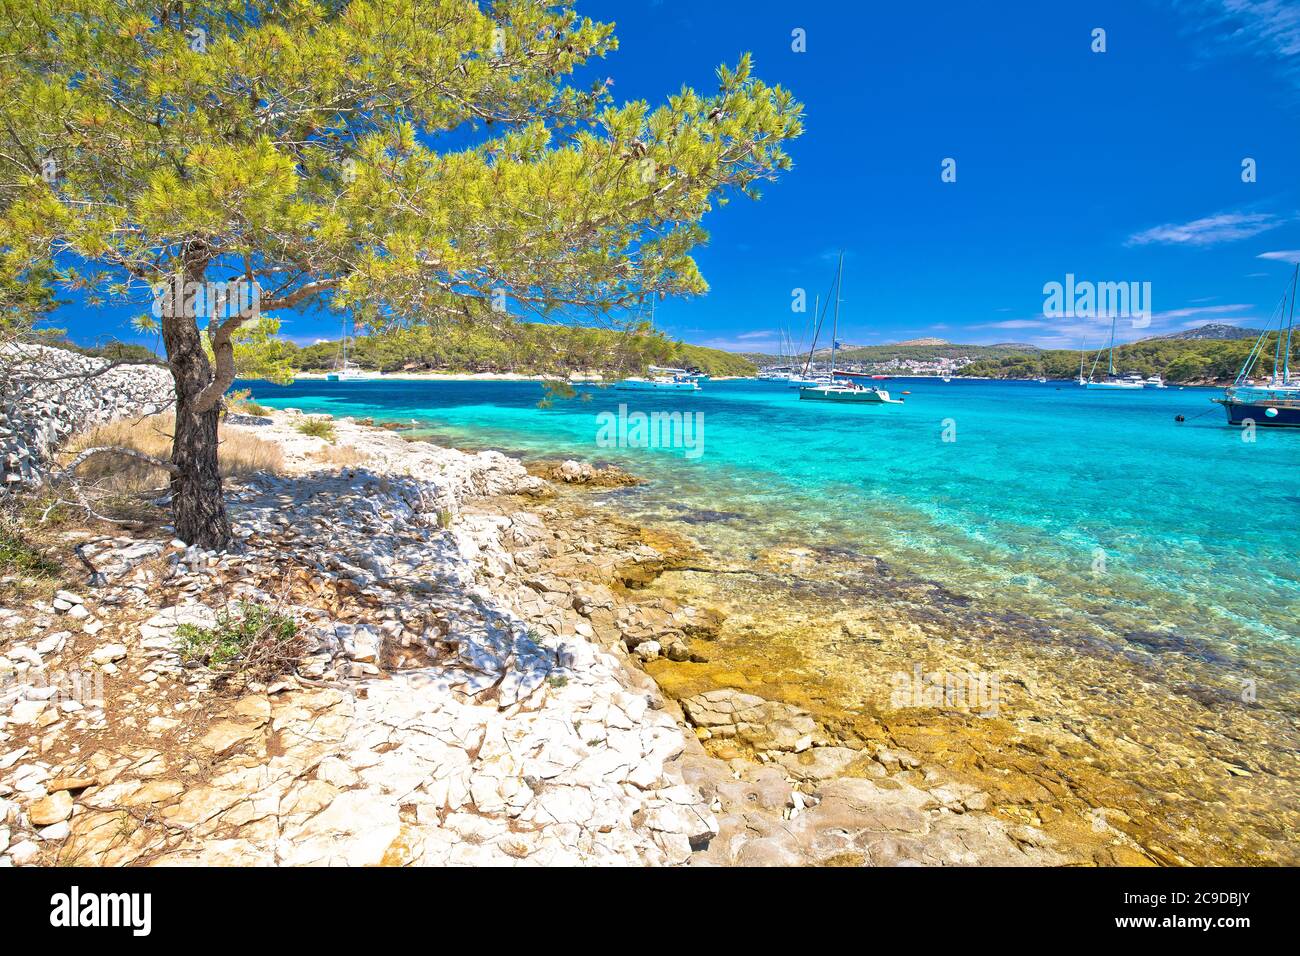 Plage turquoise sur les îles Pakleni otoci destination touristique, archipel de Hvar, Croatie Banque D'Images